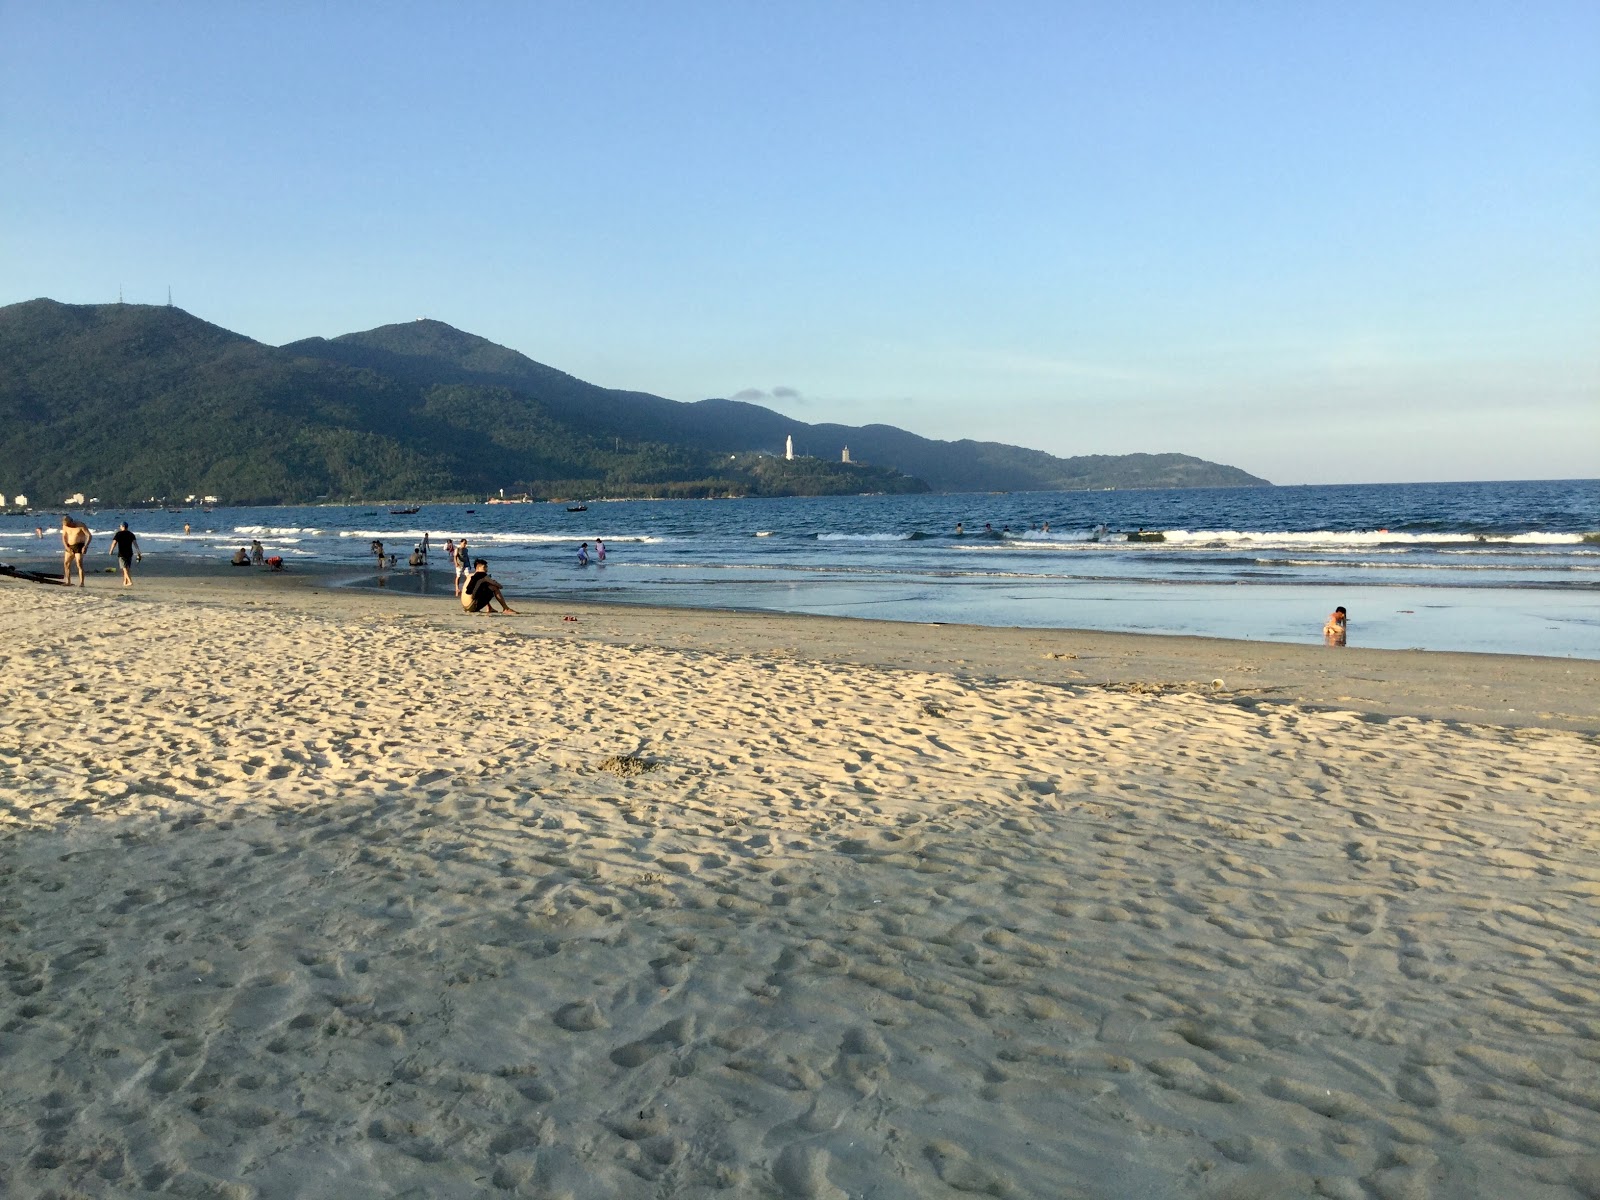 Man Thai Beach'in fotoğrafı - rahatlamayı sevenler arasında popüler bir yer